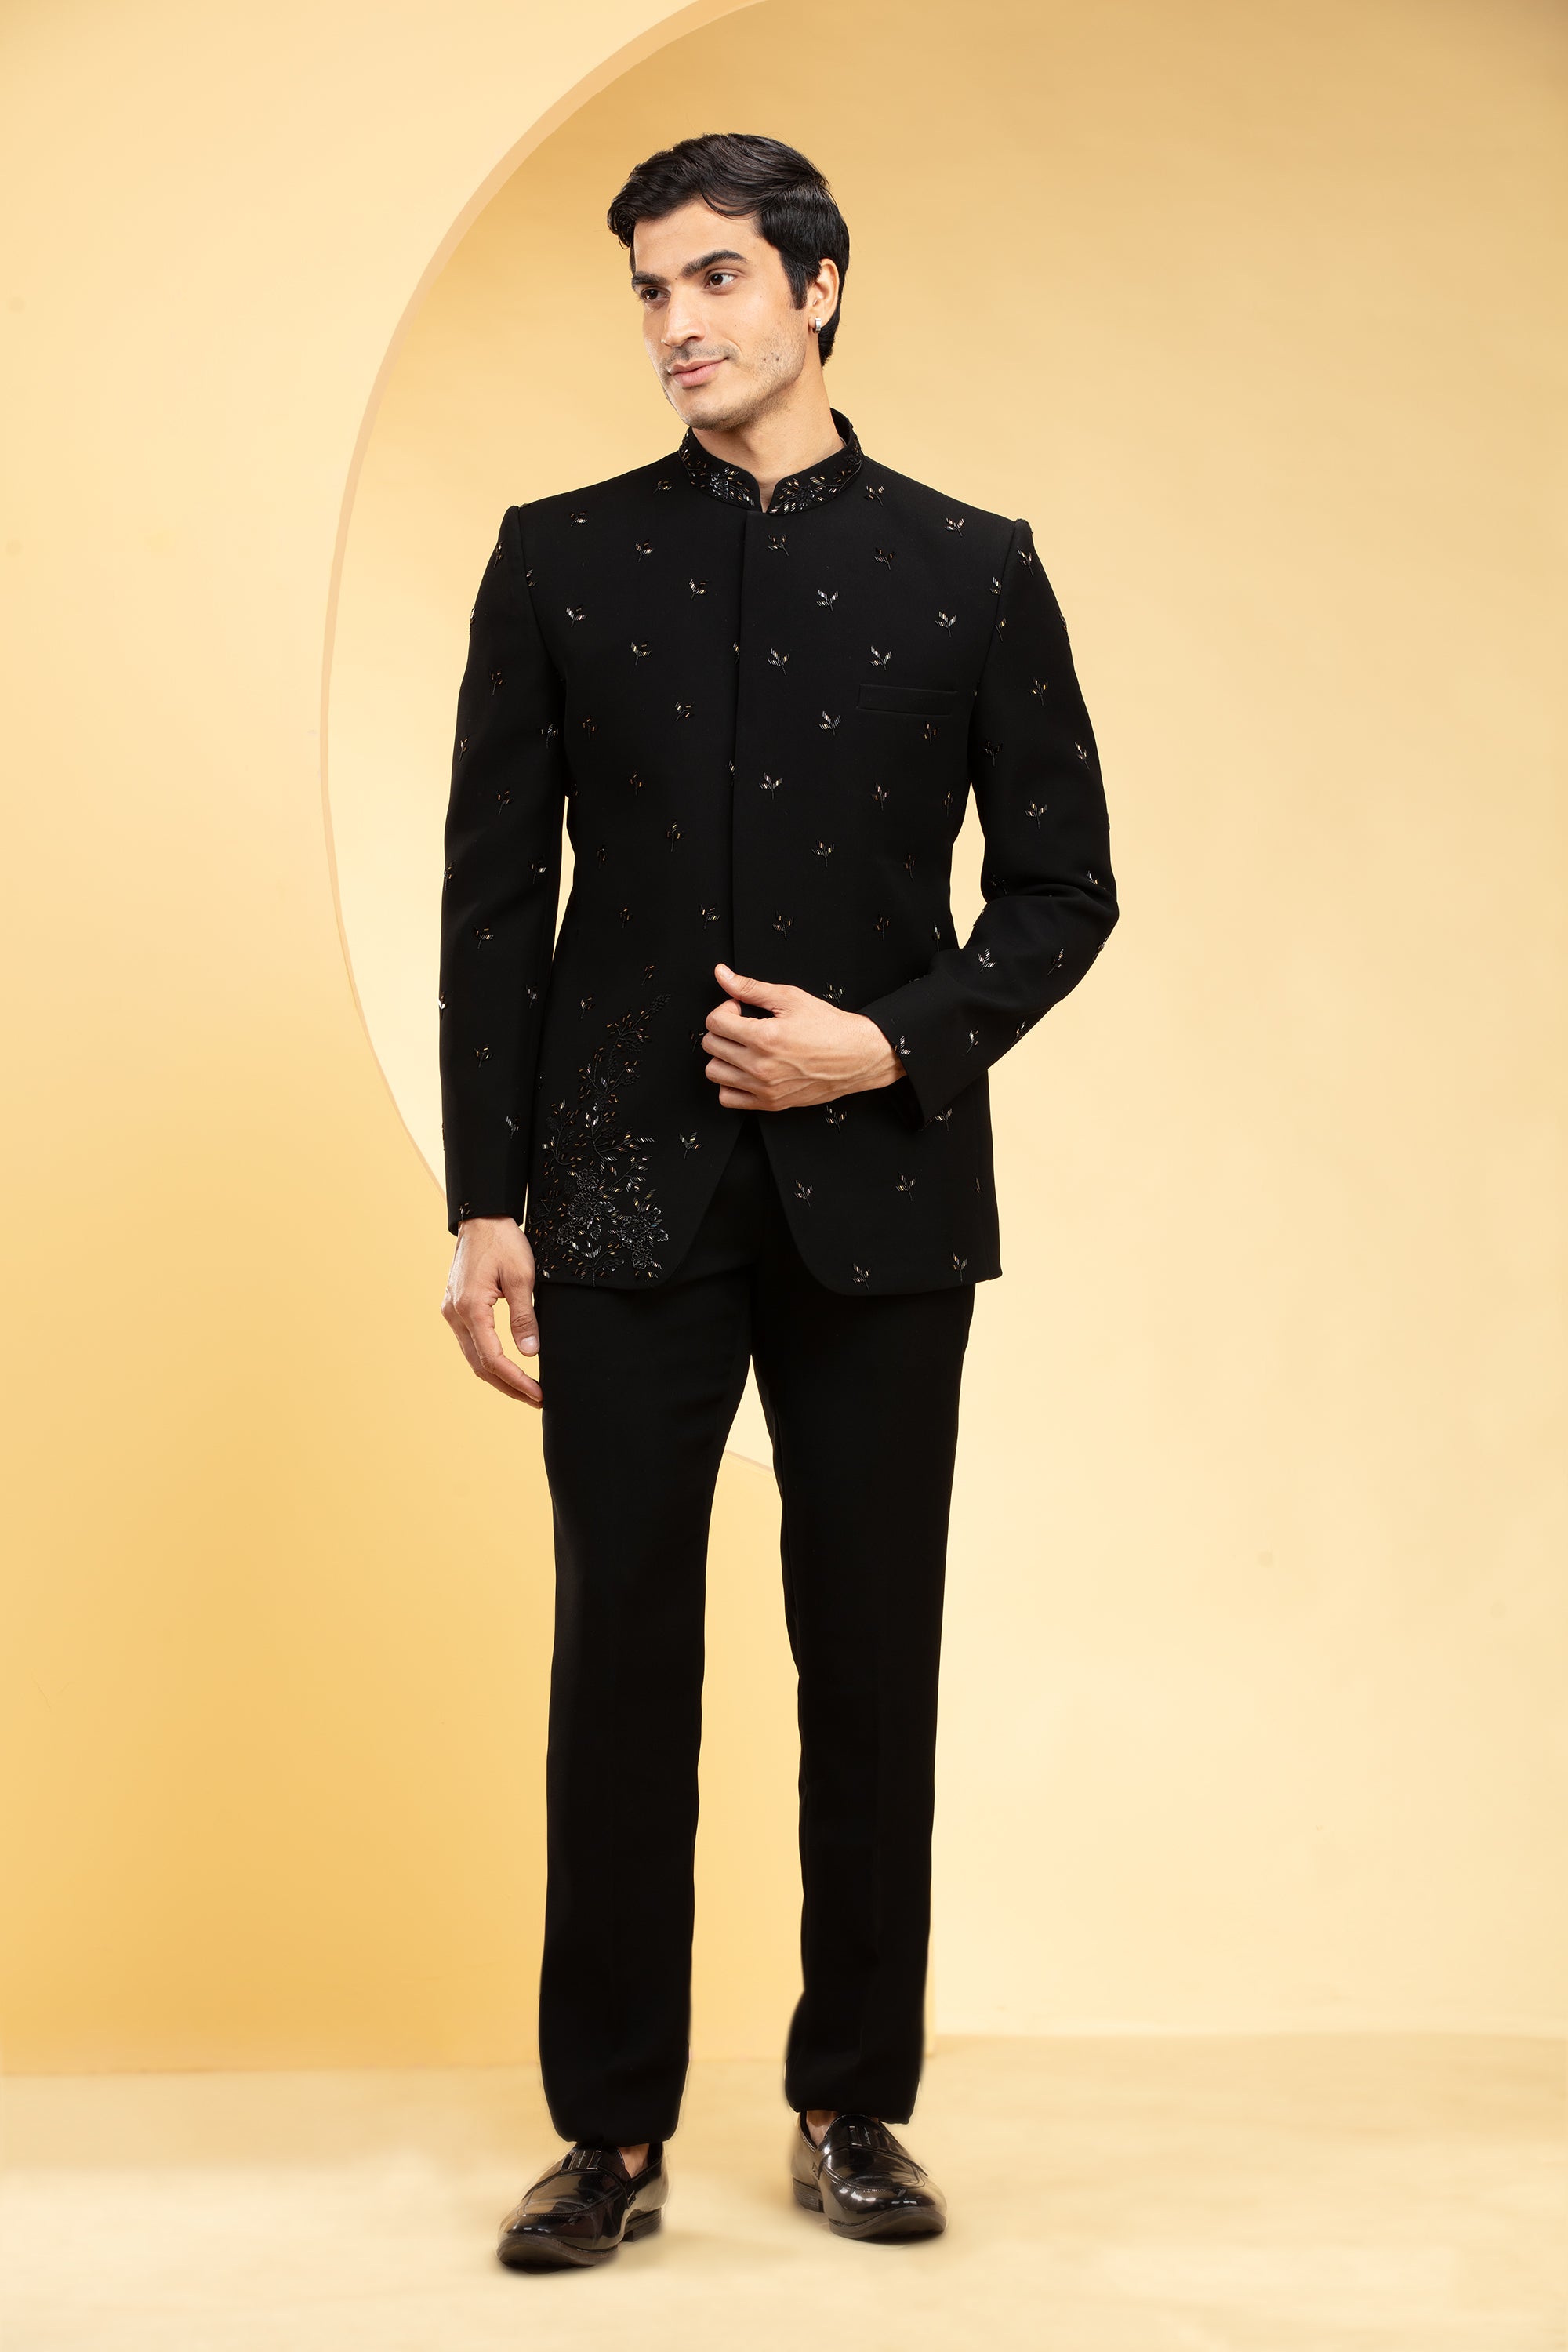 Ravin Trendy Full Buttoned Black Shirt For Men, Black, S: Buy